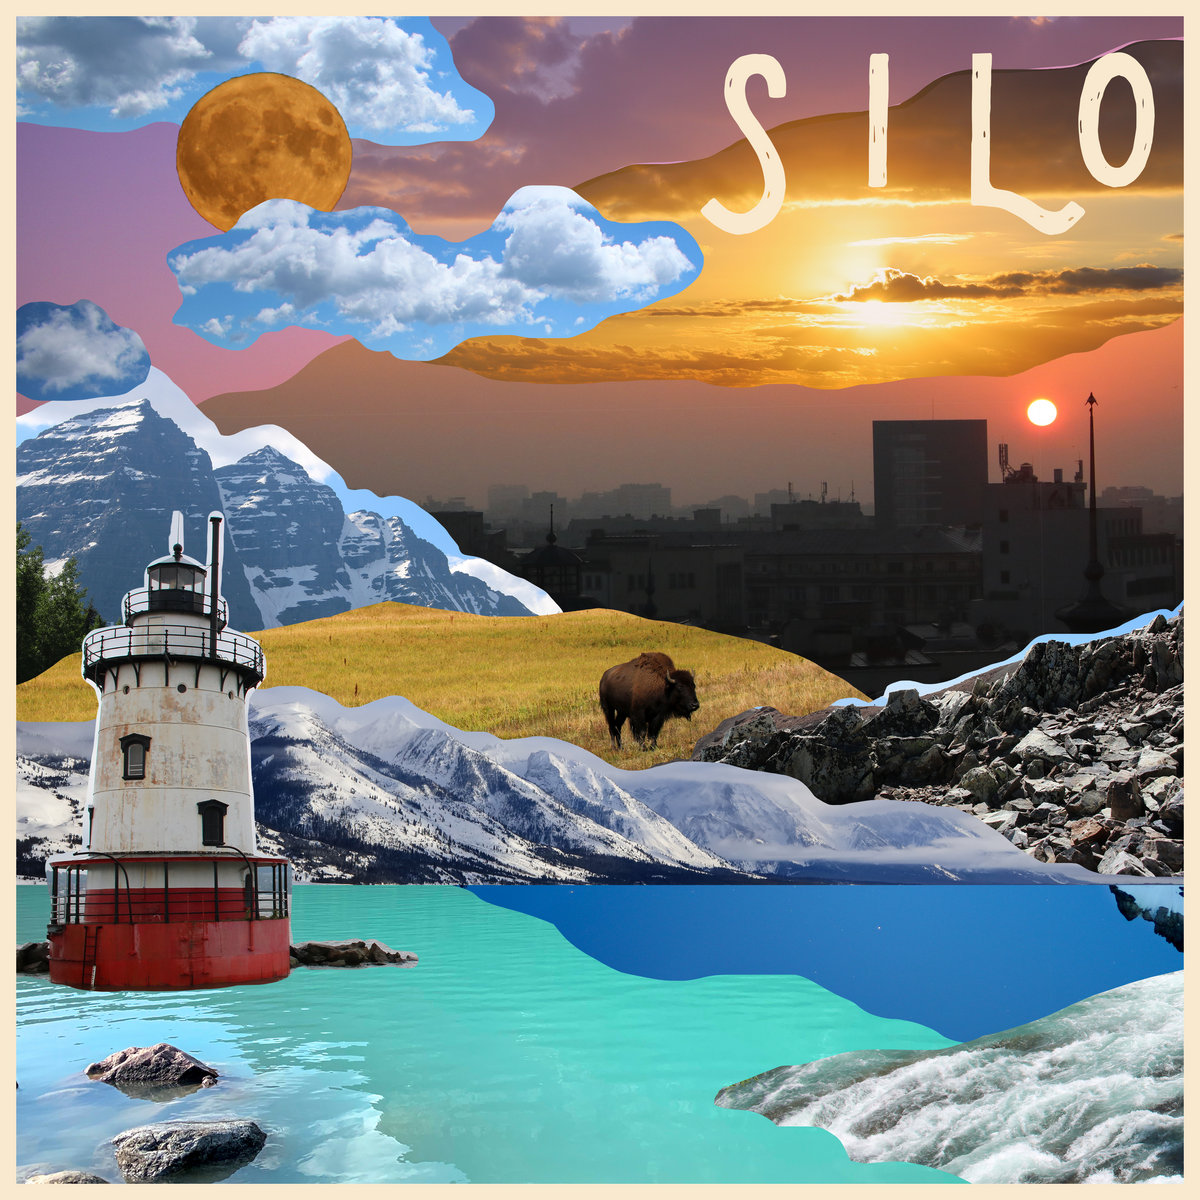 The Altogether Silo cover artwork